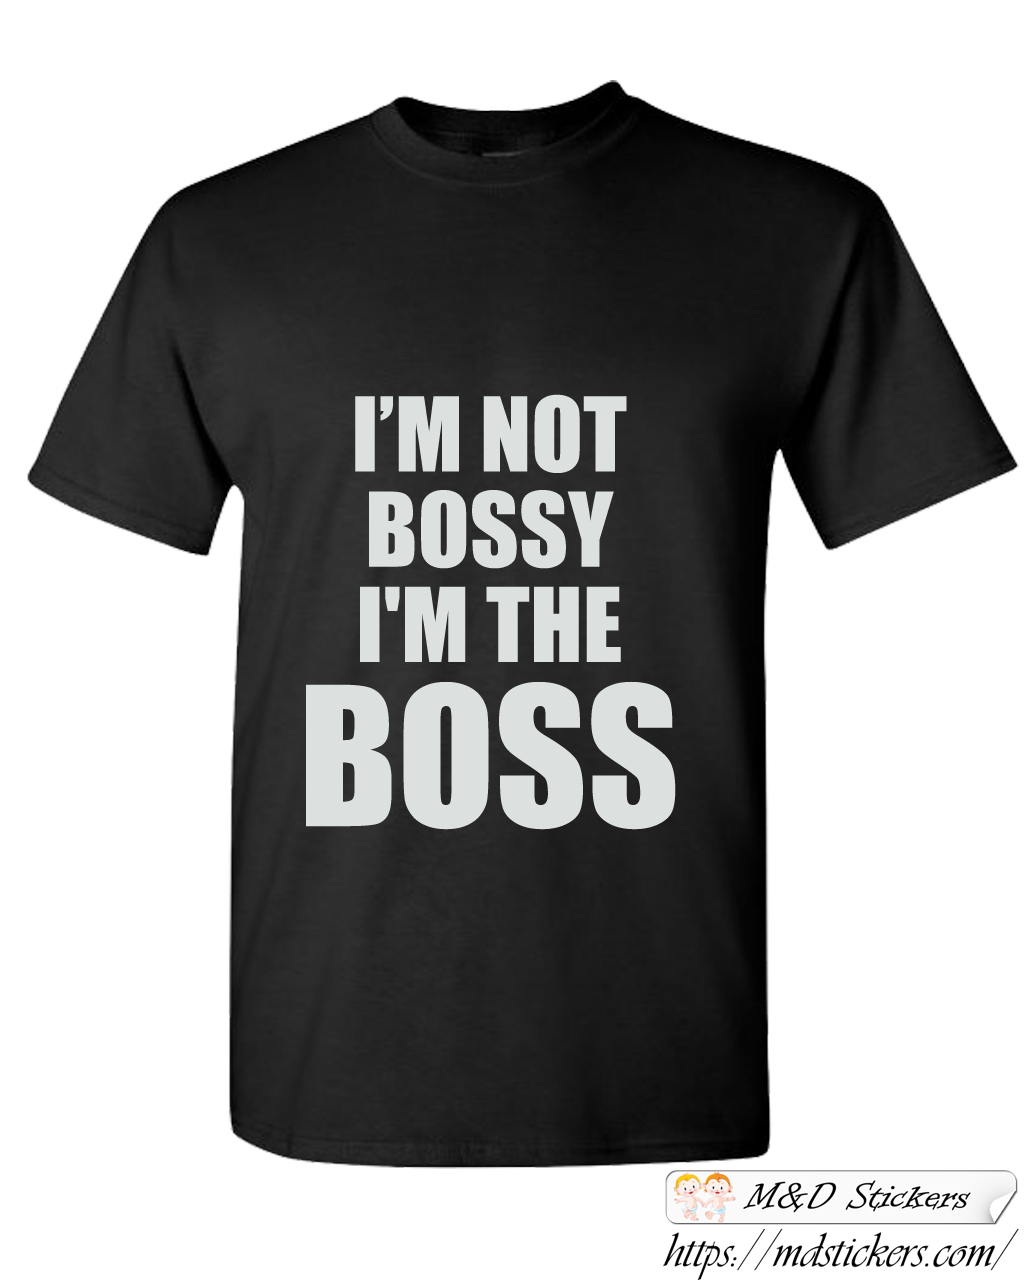 Custom T-shirt bossy boss